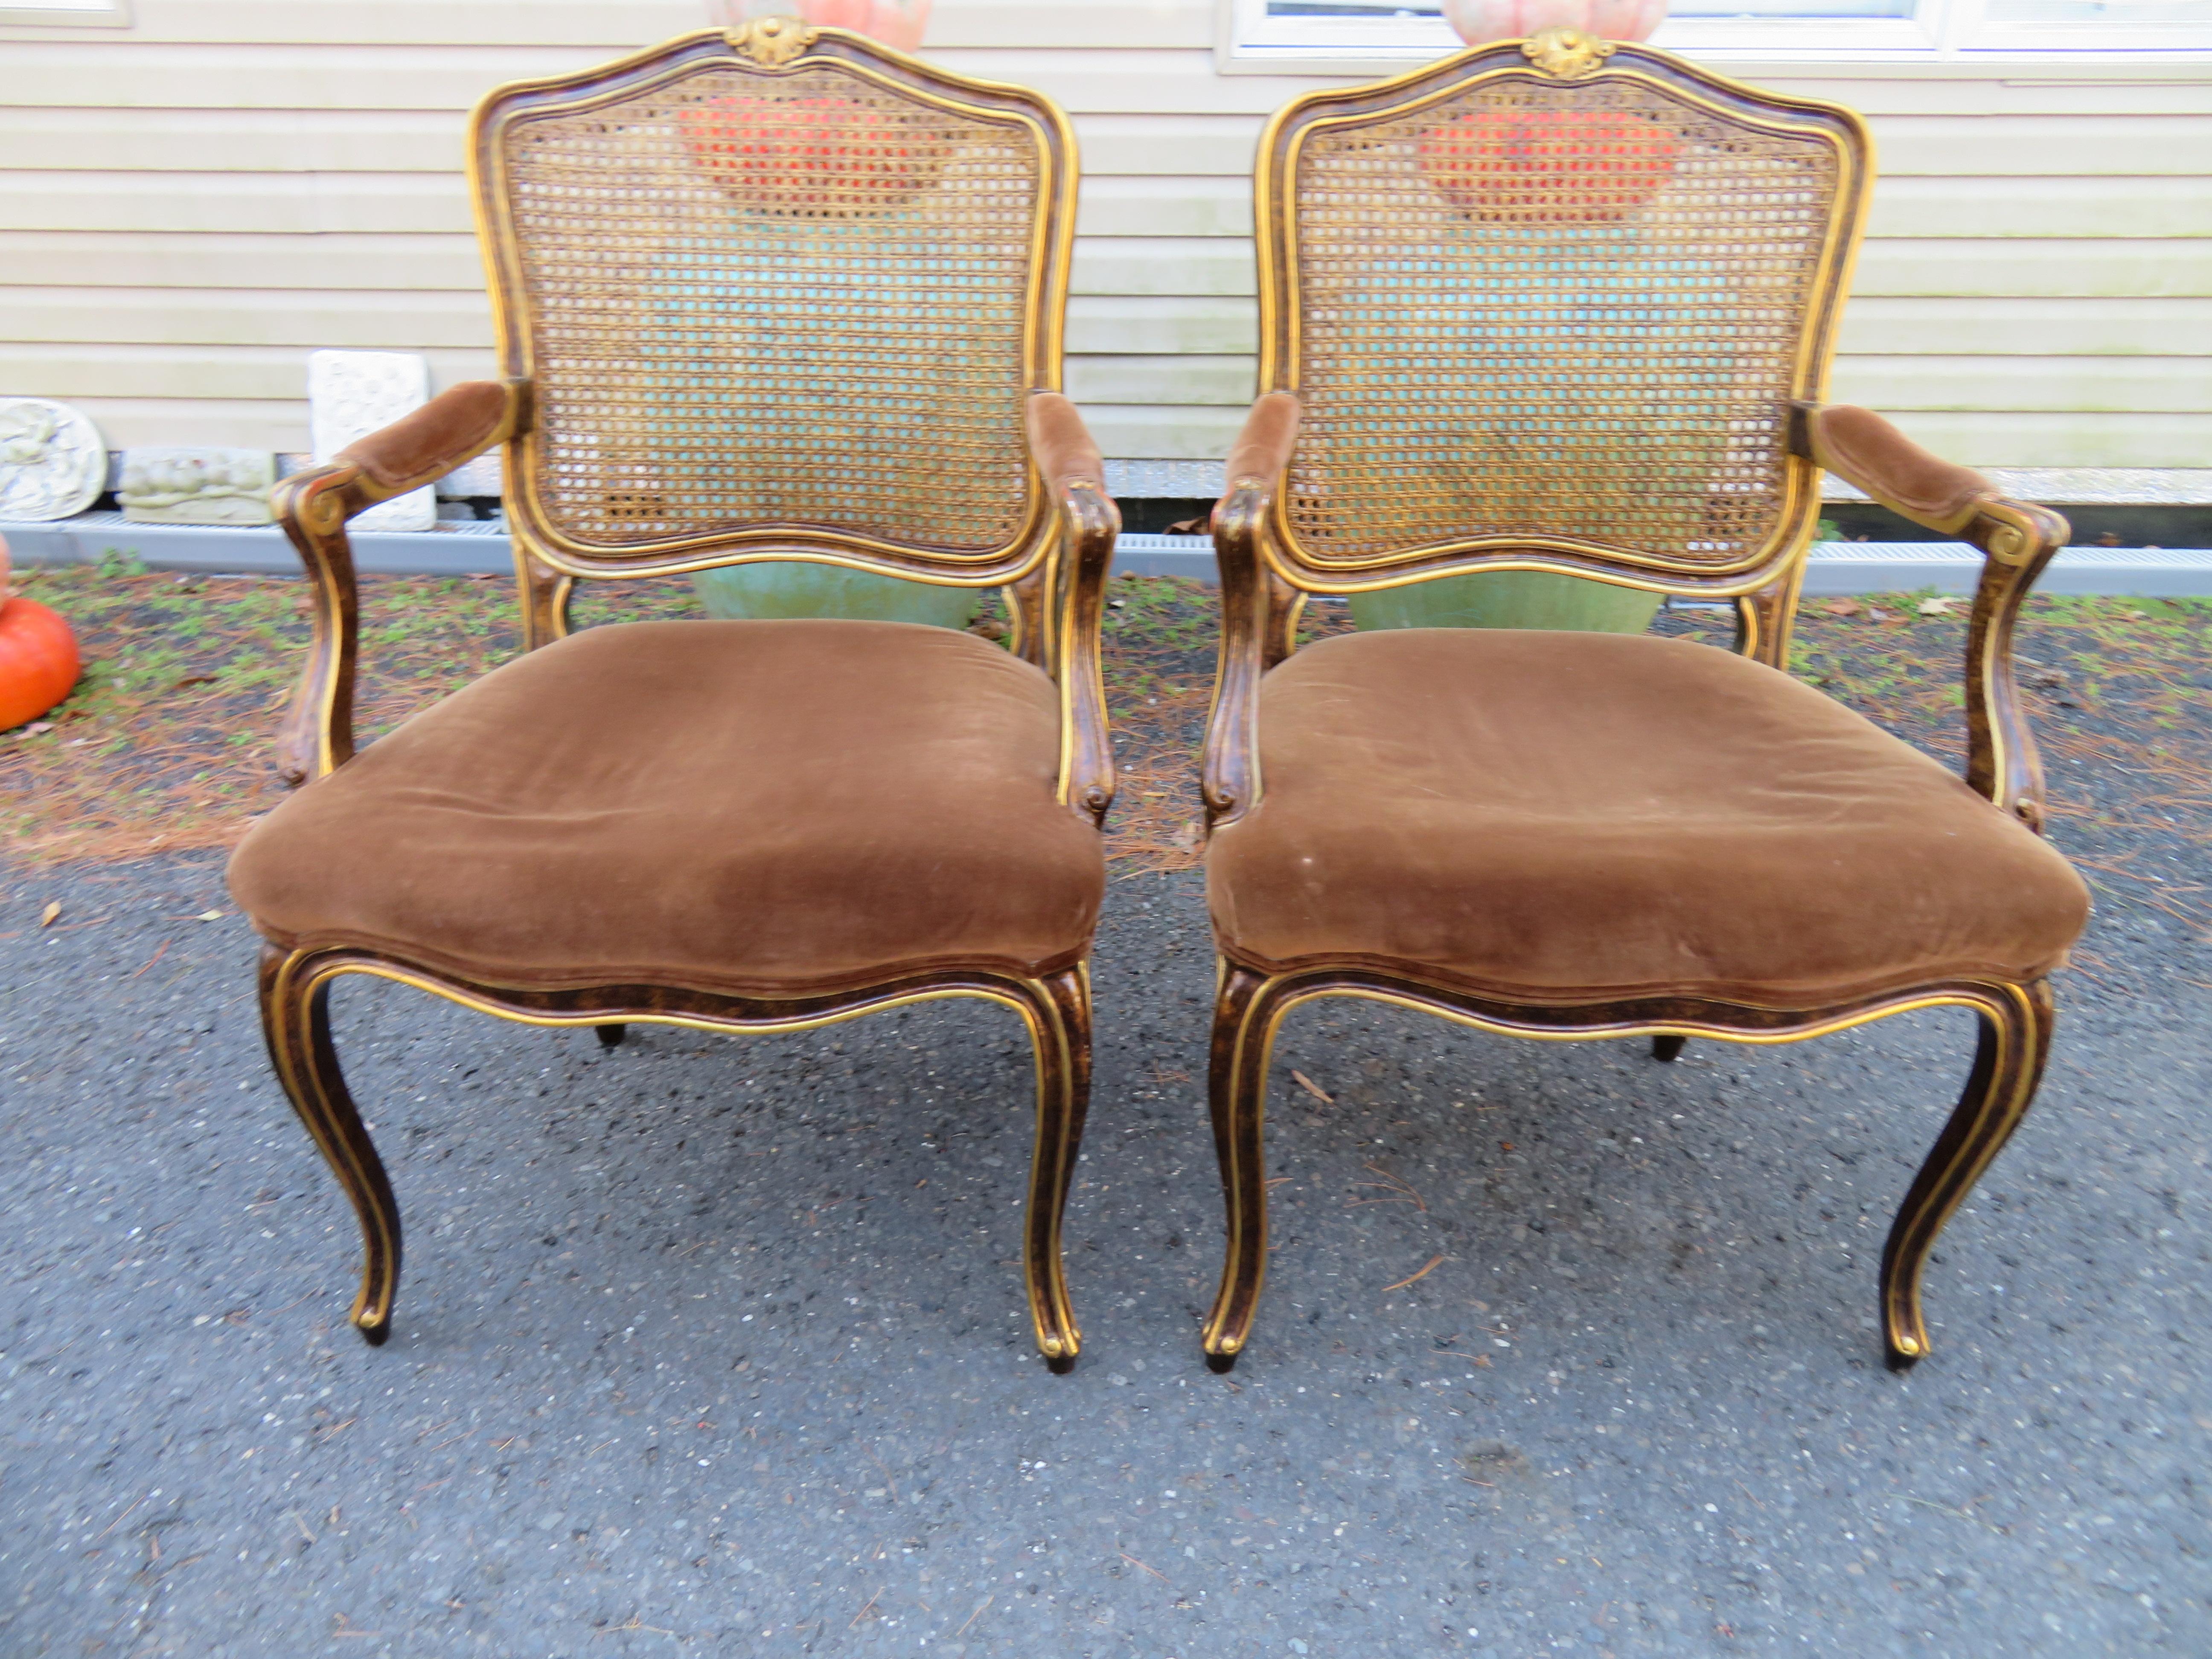 Spectaculaire paire de chaises Fauteuils Louis XV à dossier canné de John Widdicomb. Nous adorons la superbe finition originale en écaille de tortue avec des détails dorés. Ces chaises ont conservé leur velours brun chocolat d'origine et sont en bon